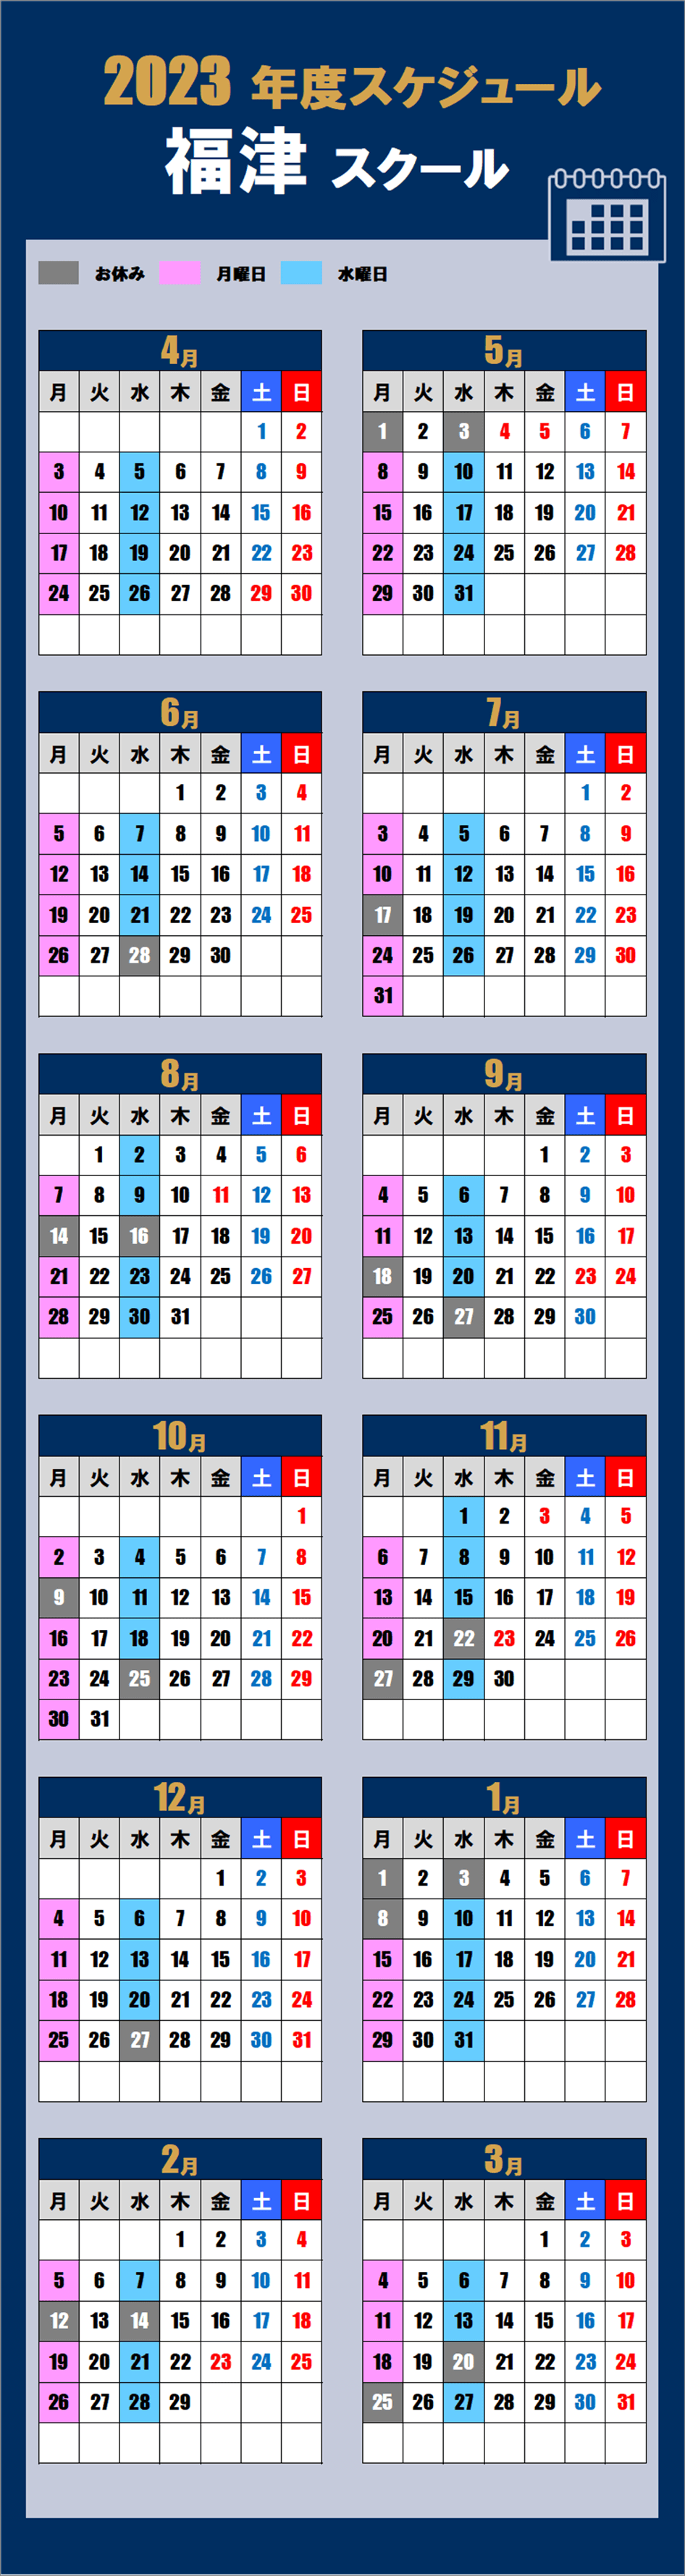 福津スクールカレンダー